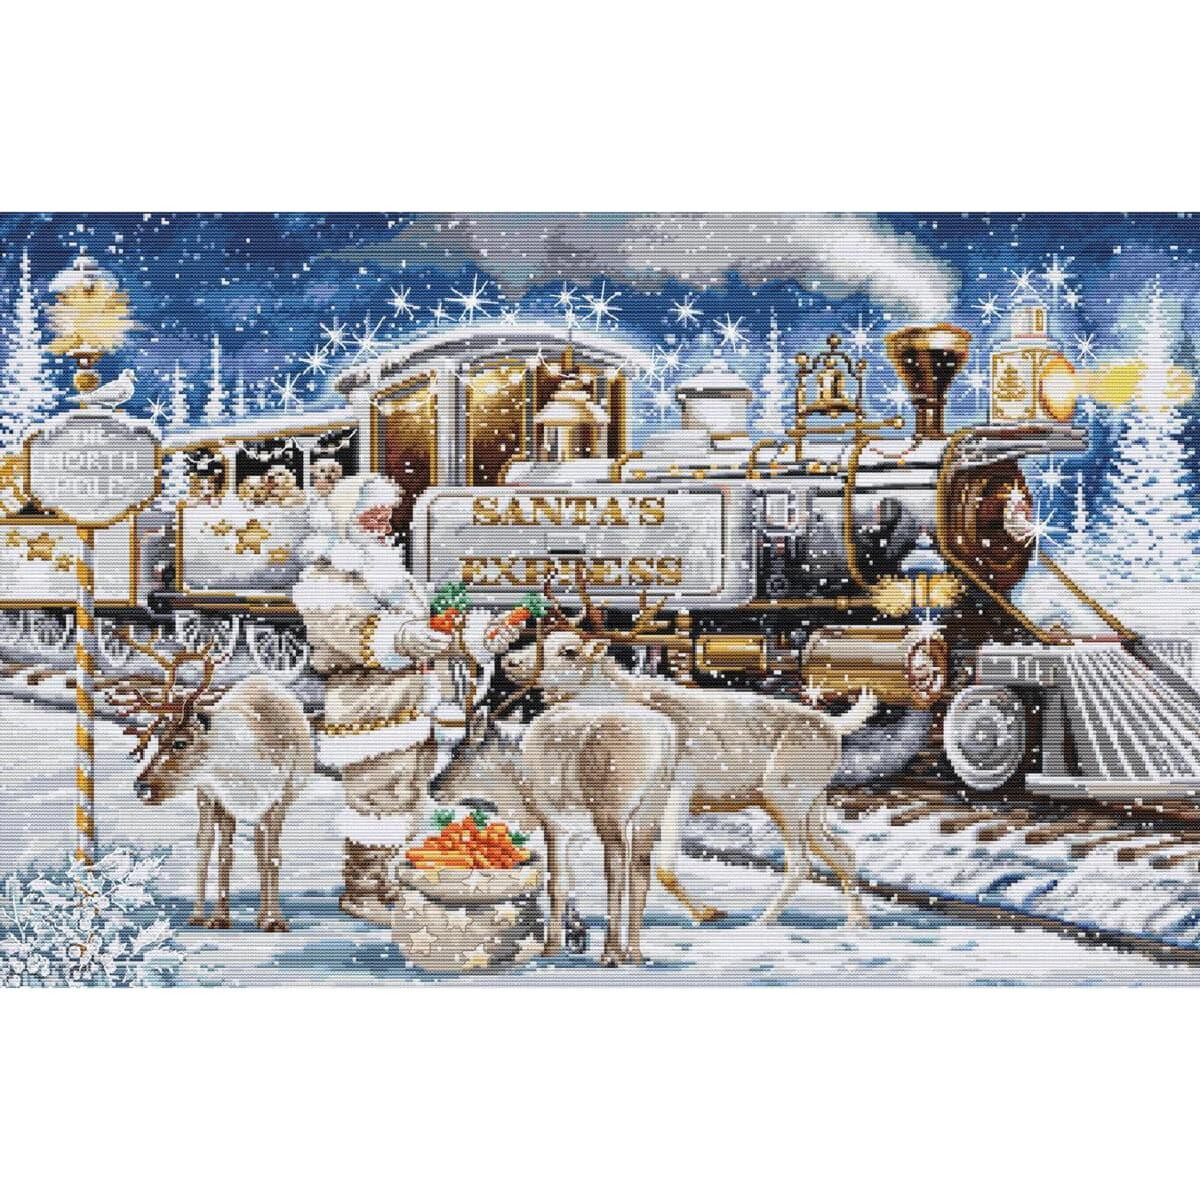 Eine festliche Szene mit dem Weihnachtsmann und einem Zug...